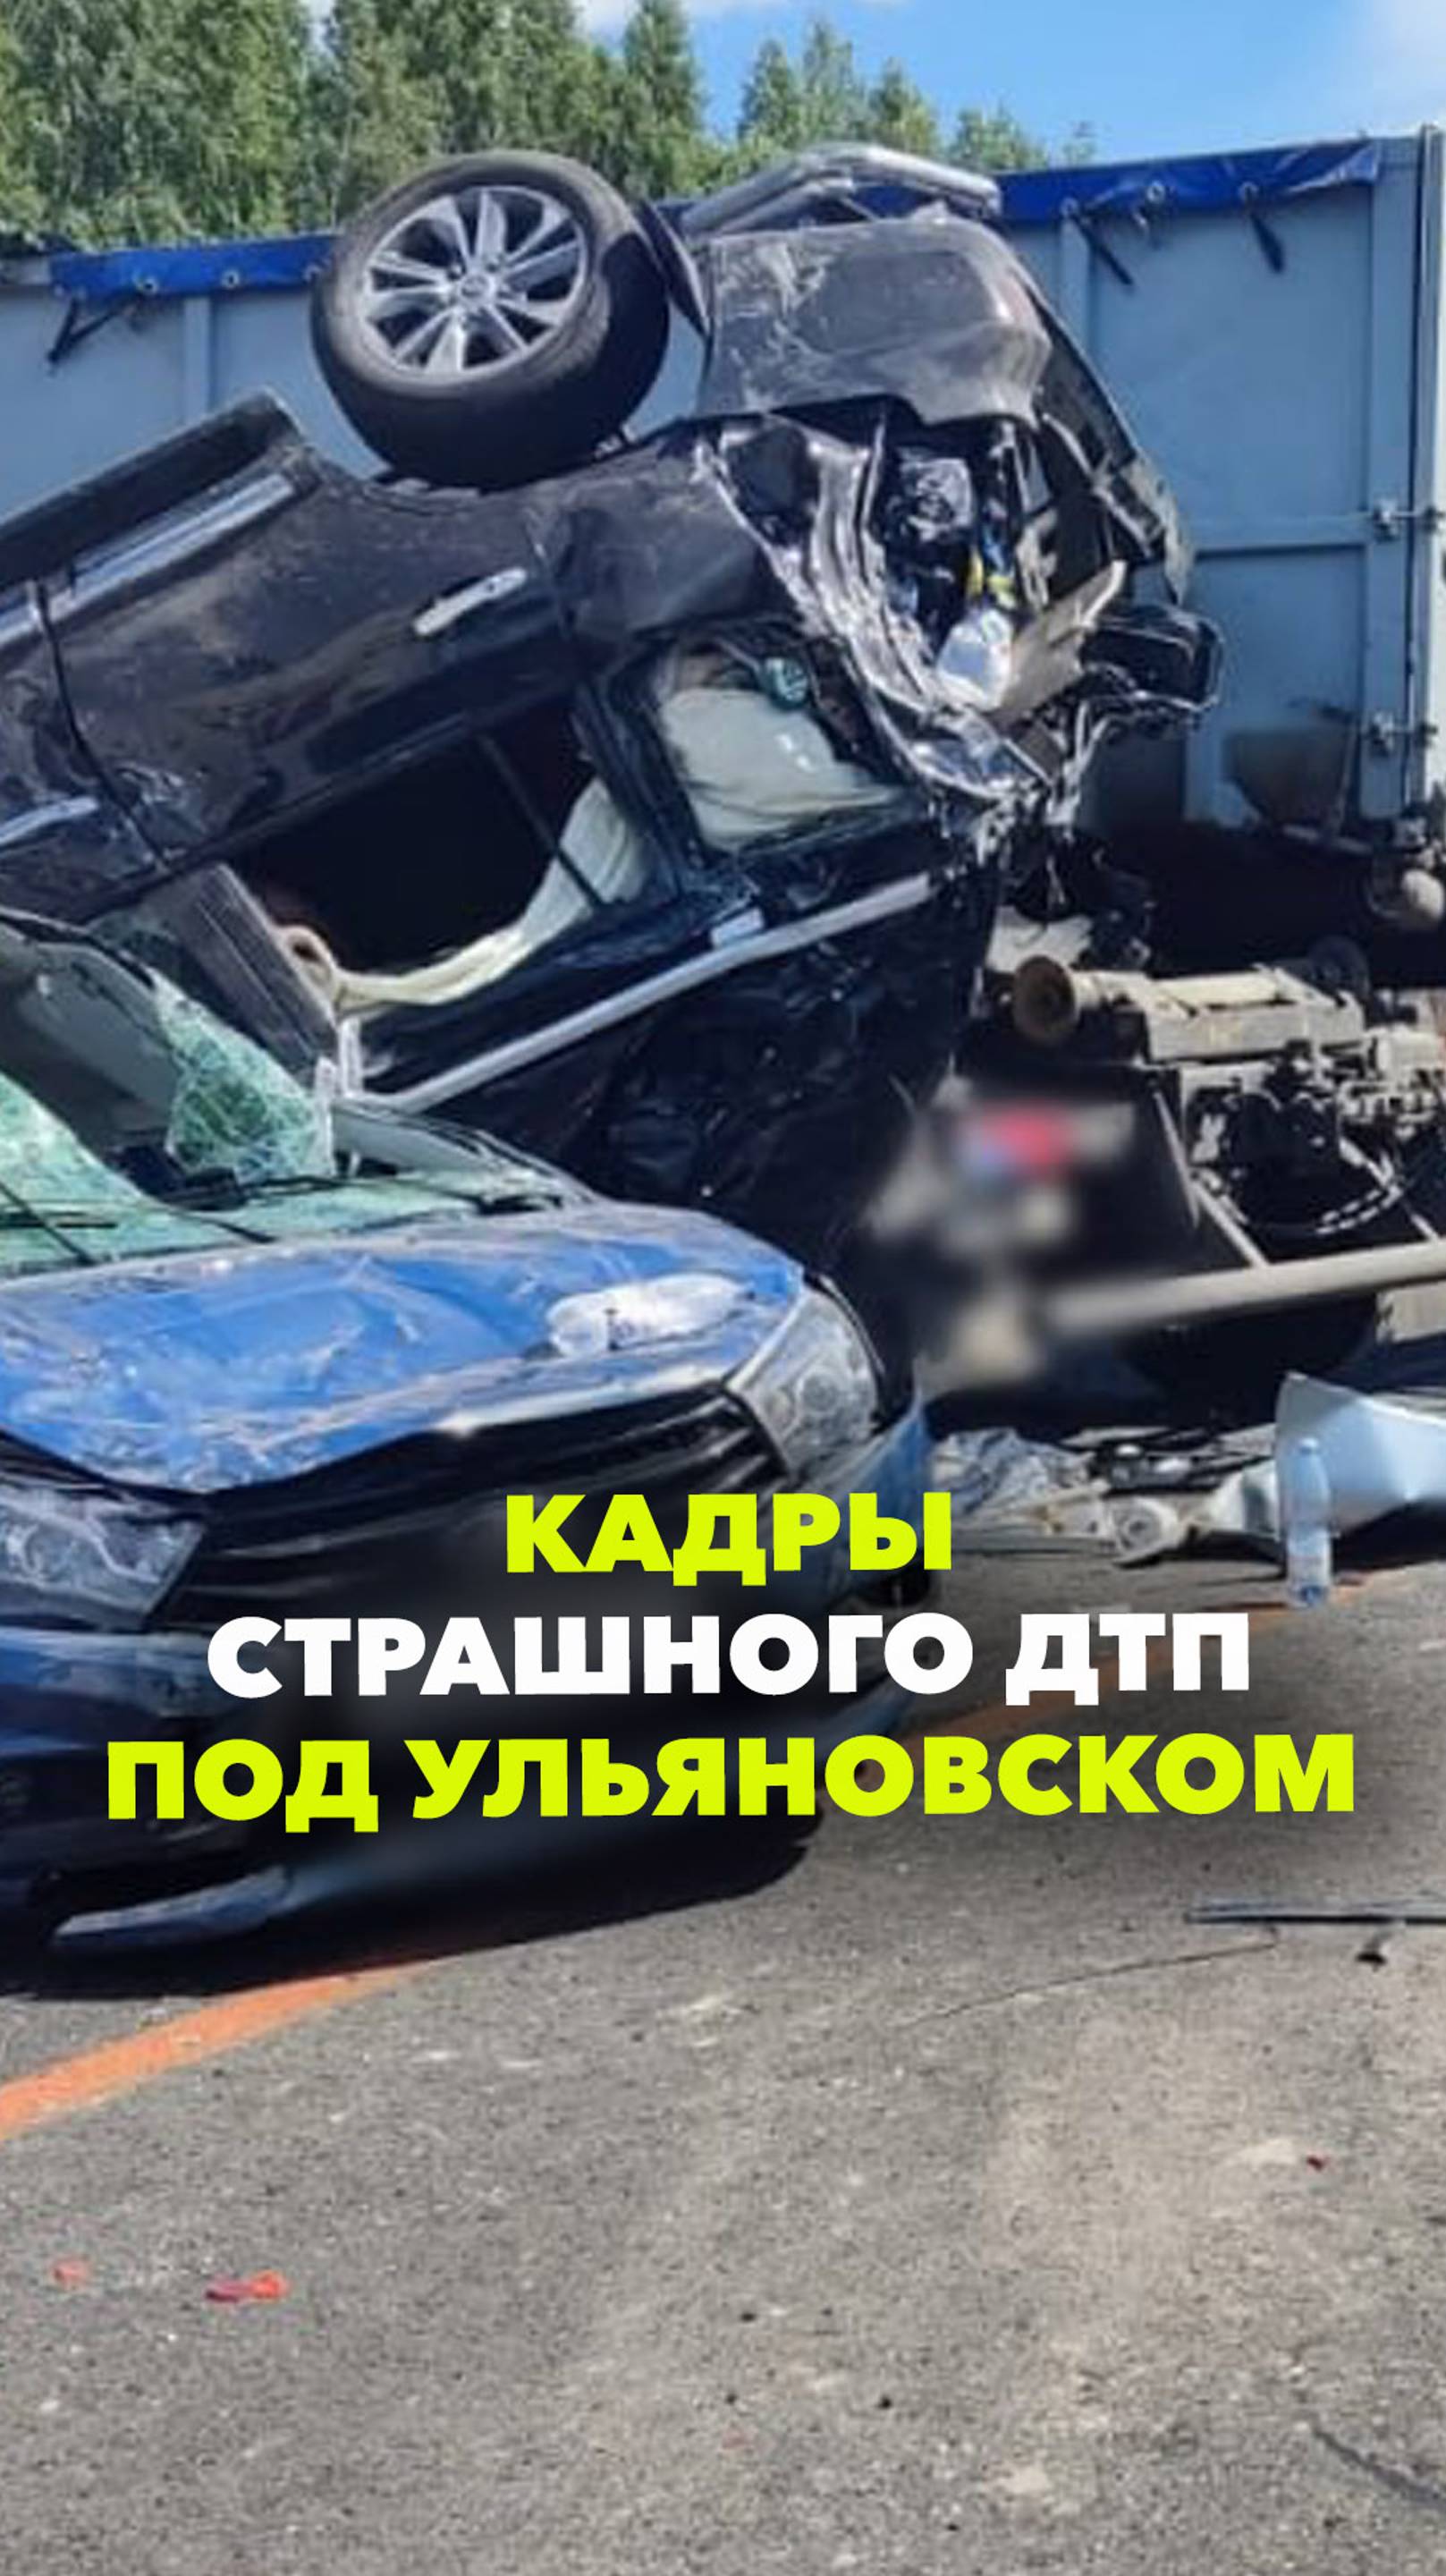 Восемь пострадавших в аварии под Ульяновском. Кадры страшного ДТП